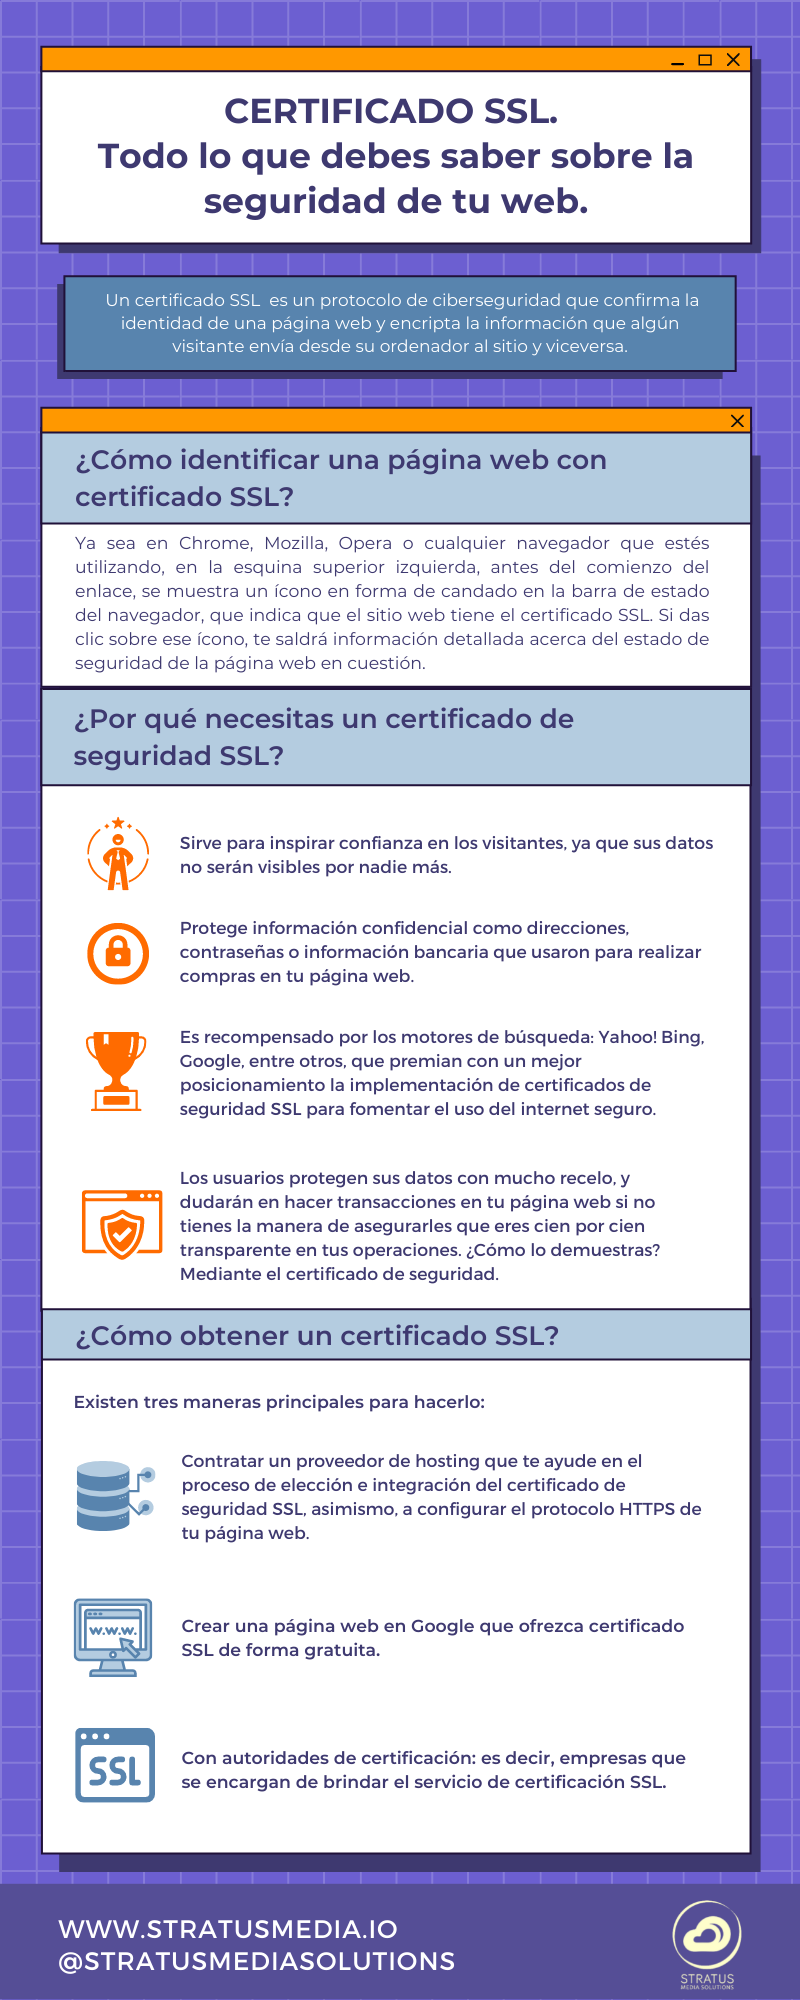 Certificado ssl infografía